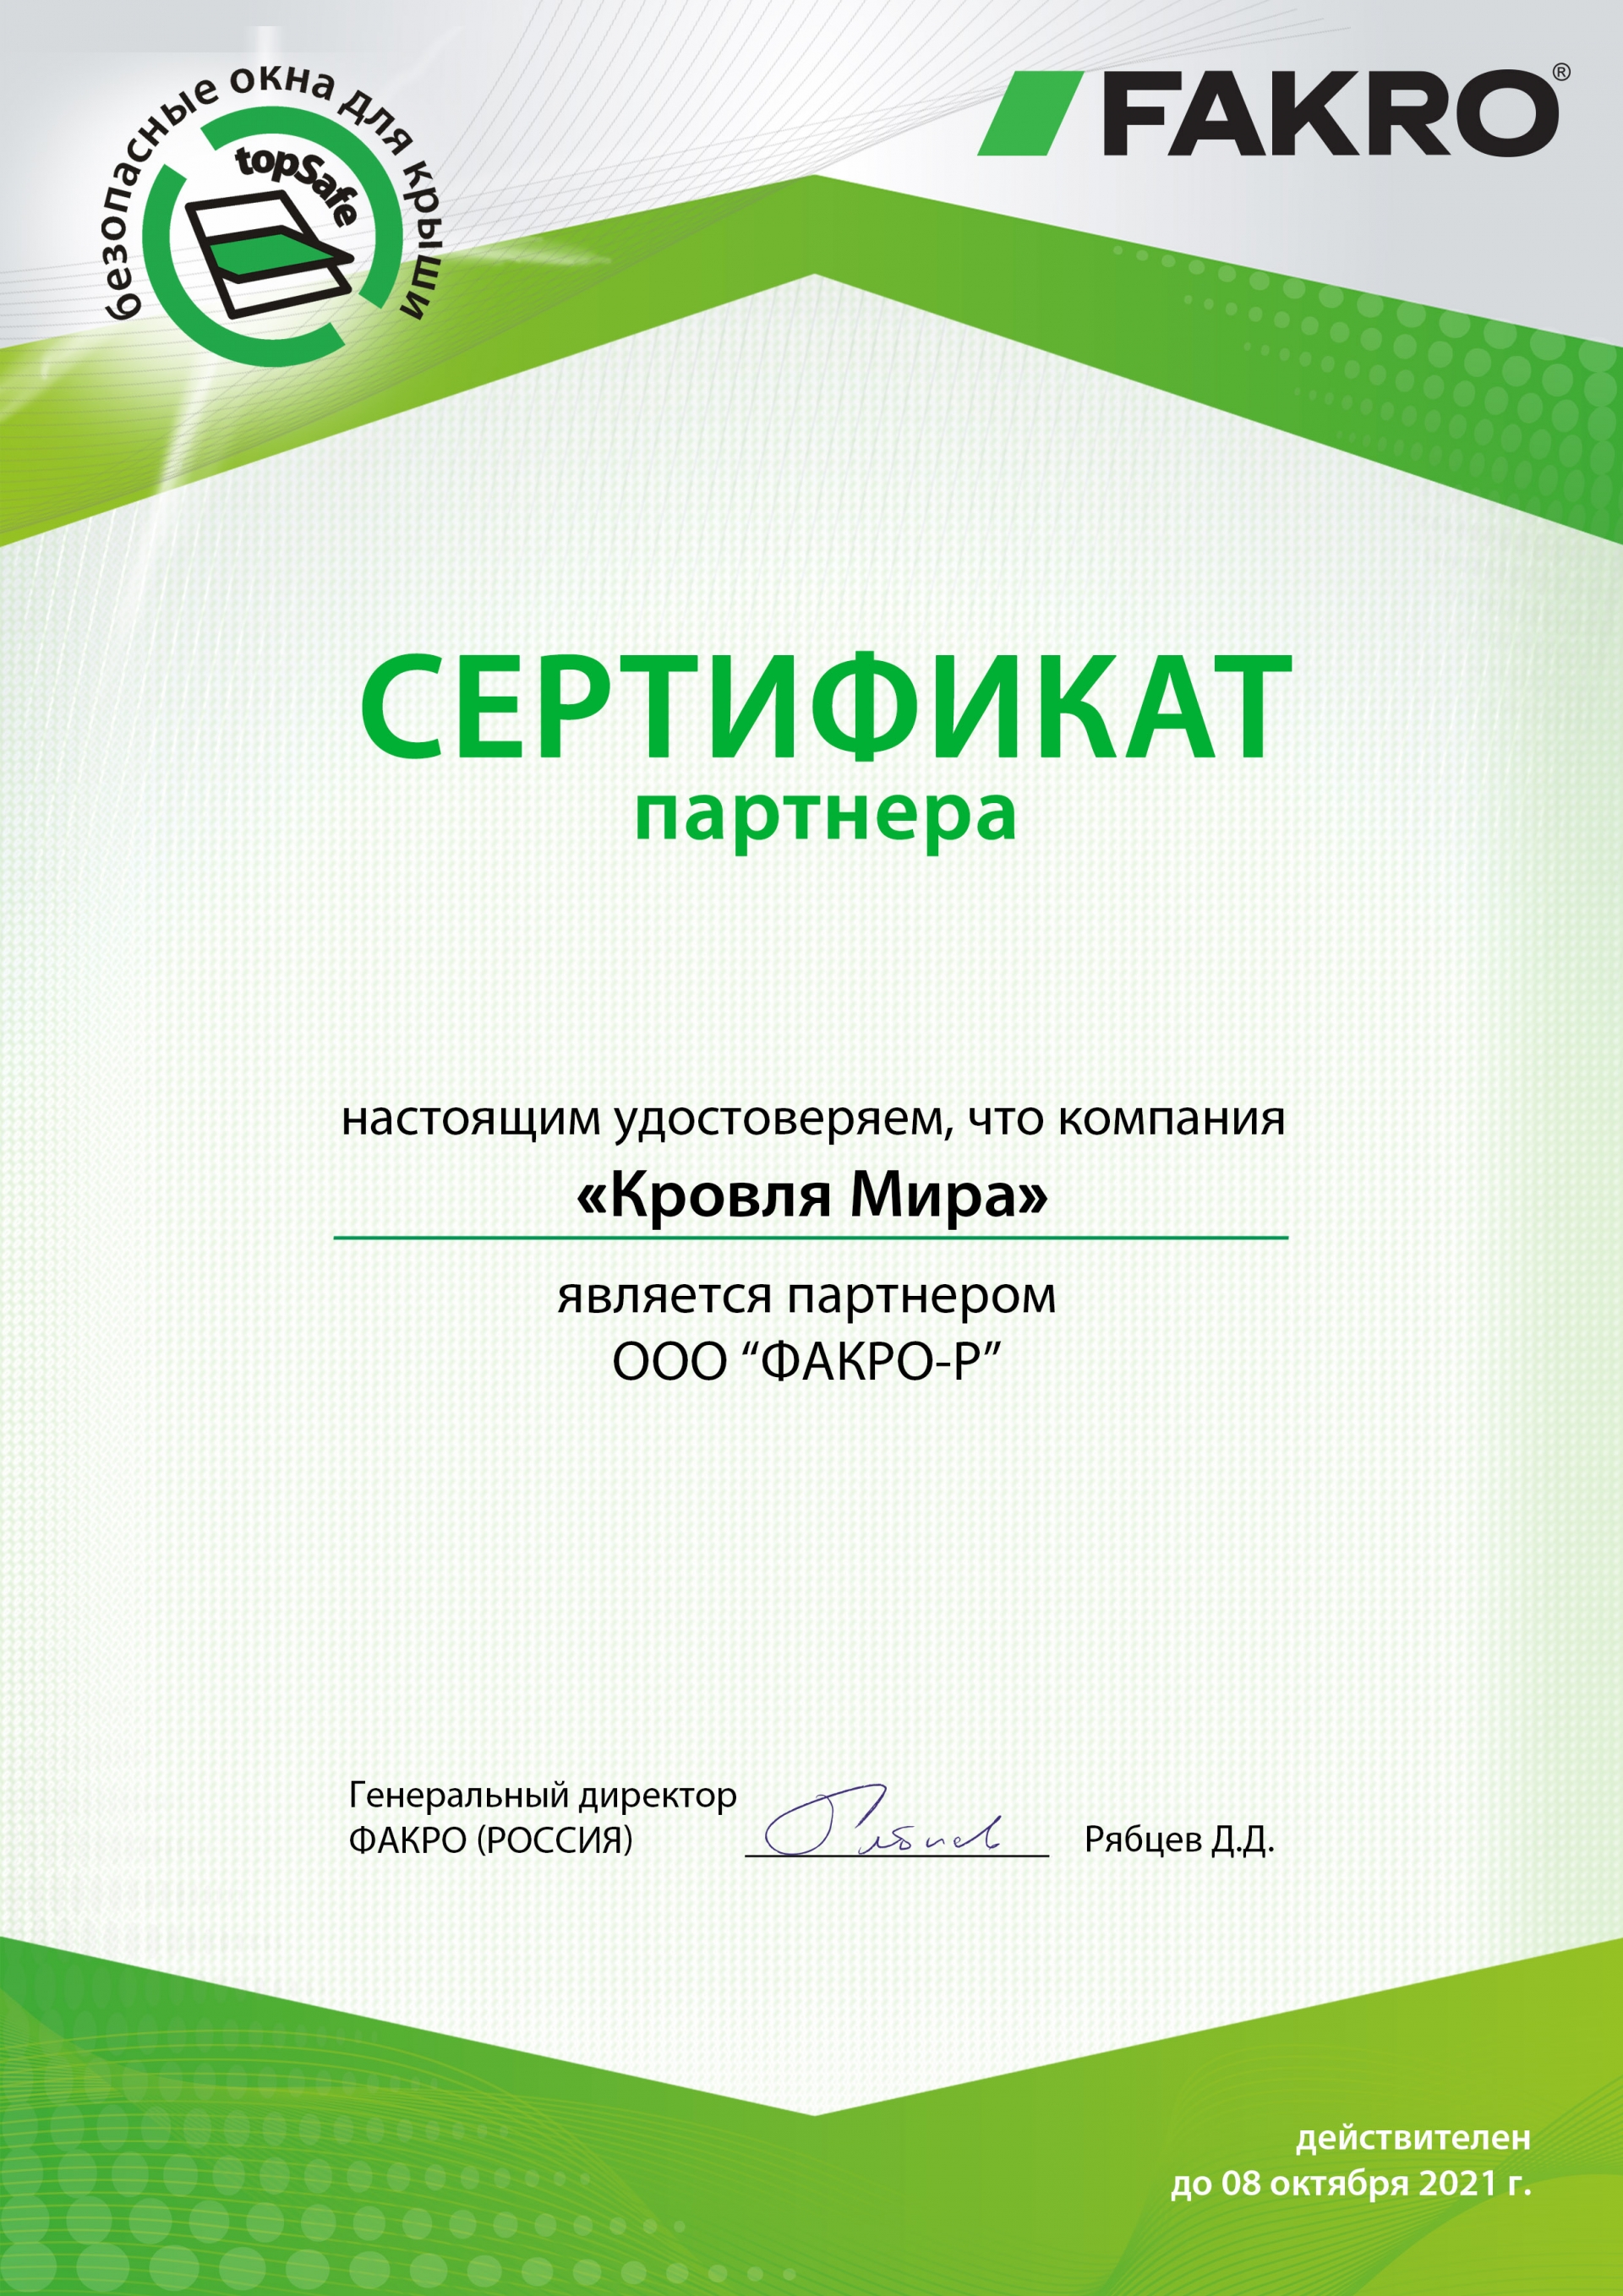 Сертификат официального партнера FAKRO, 2021 г.